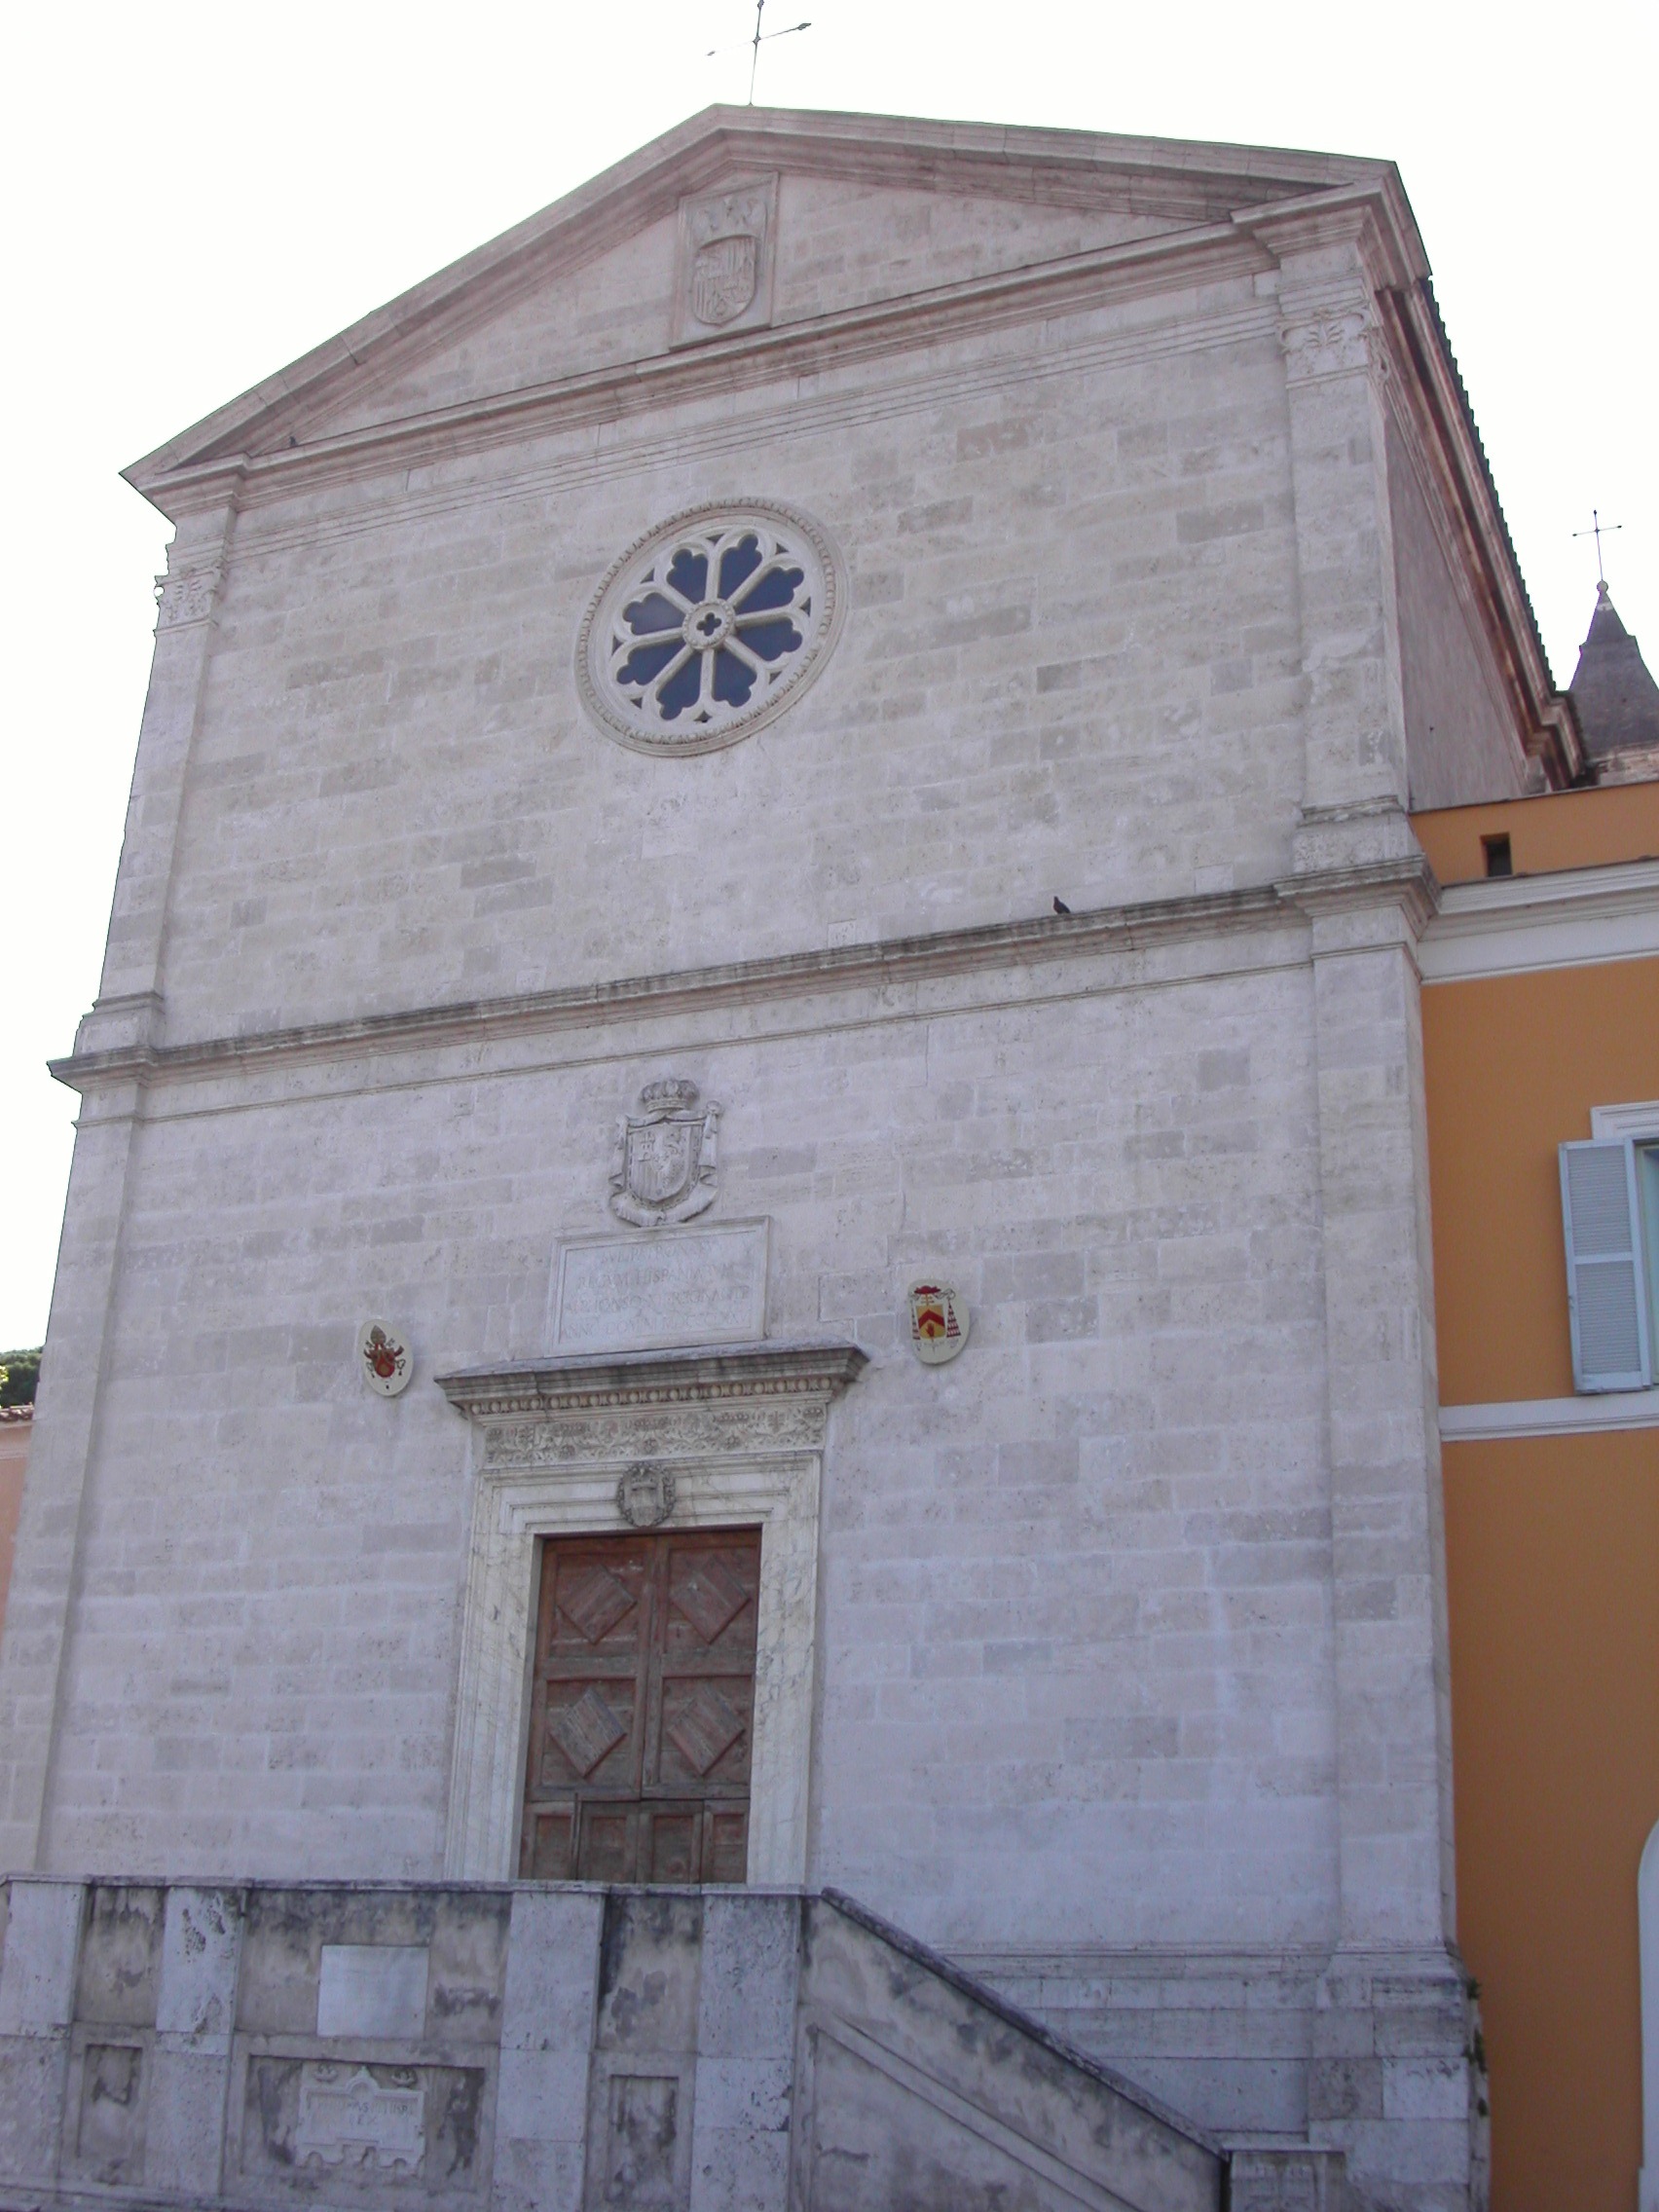 San Pietro in Montorio - Churches of Rome Wiki